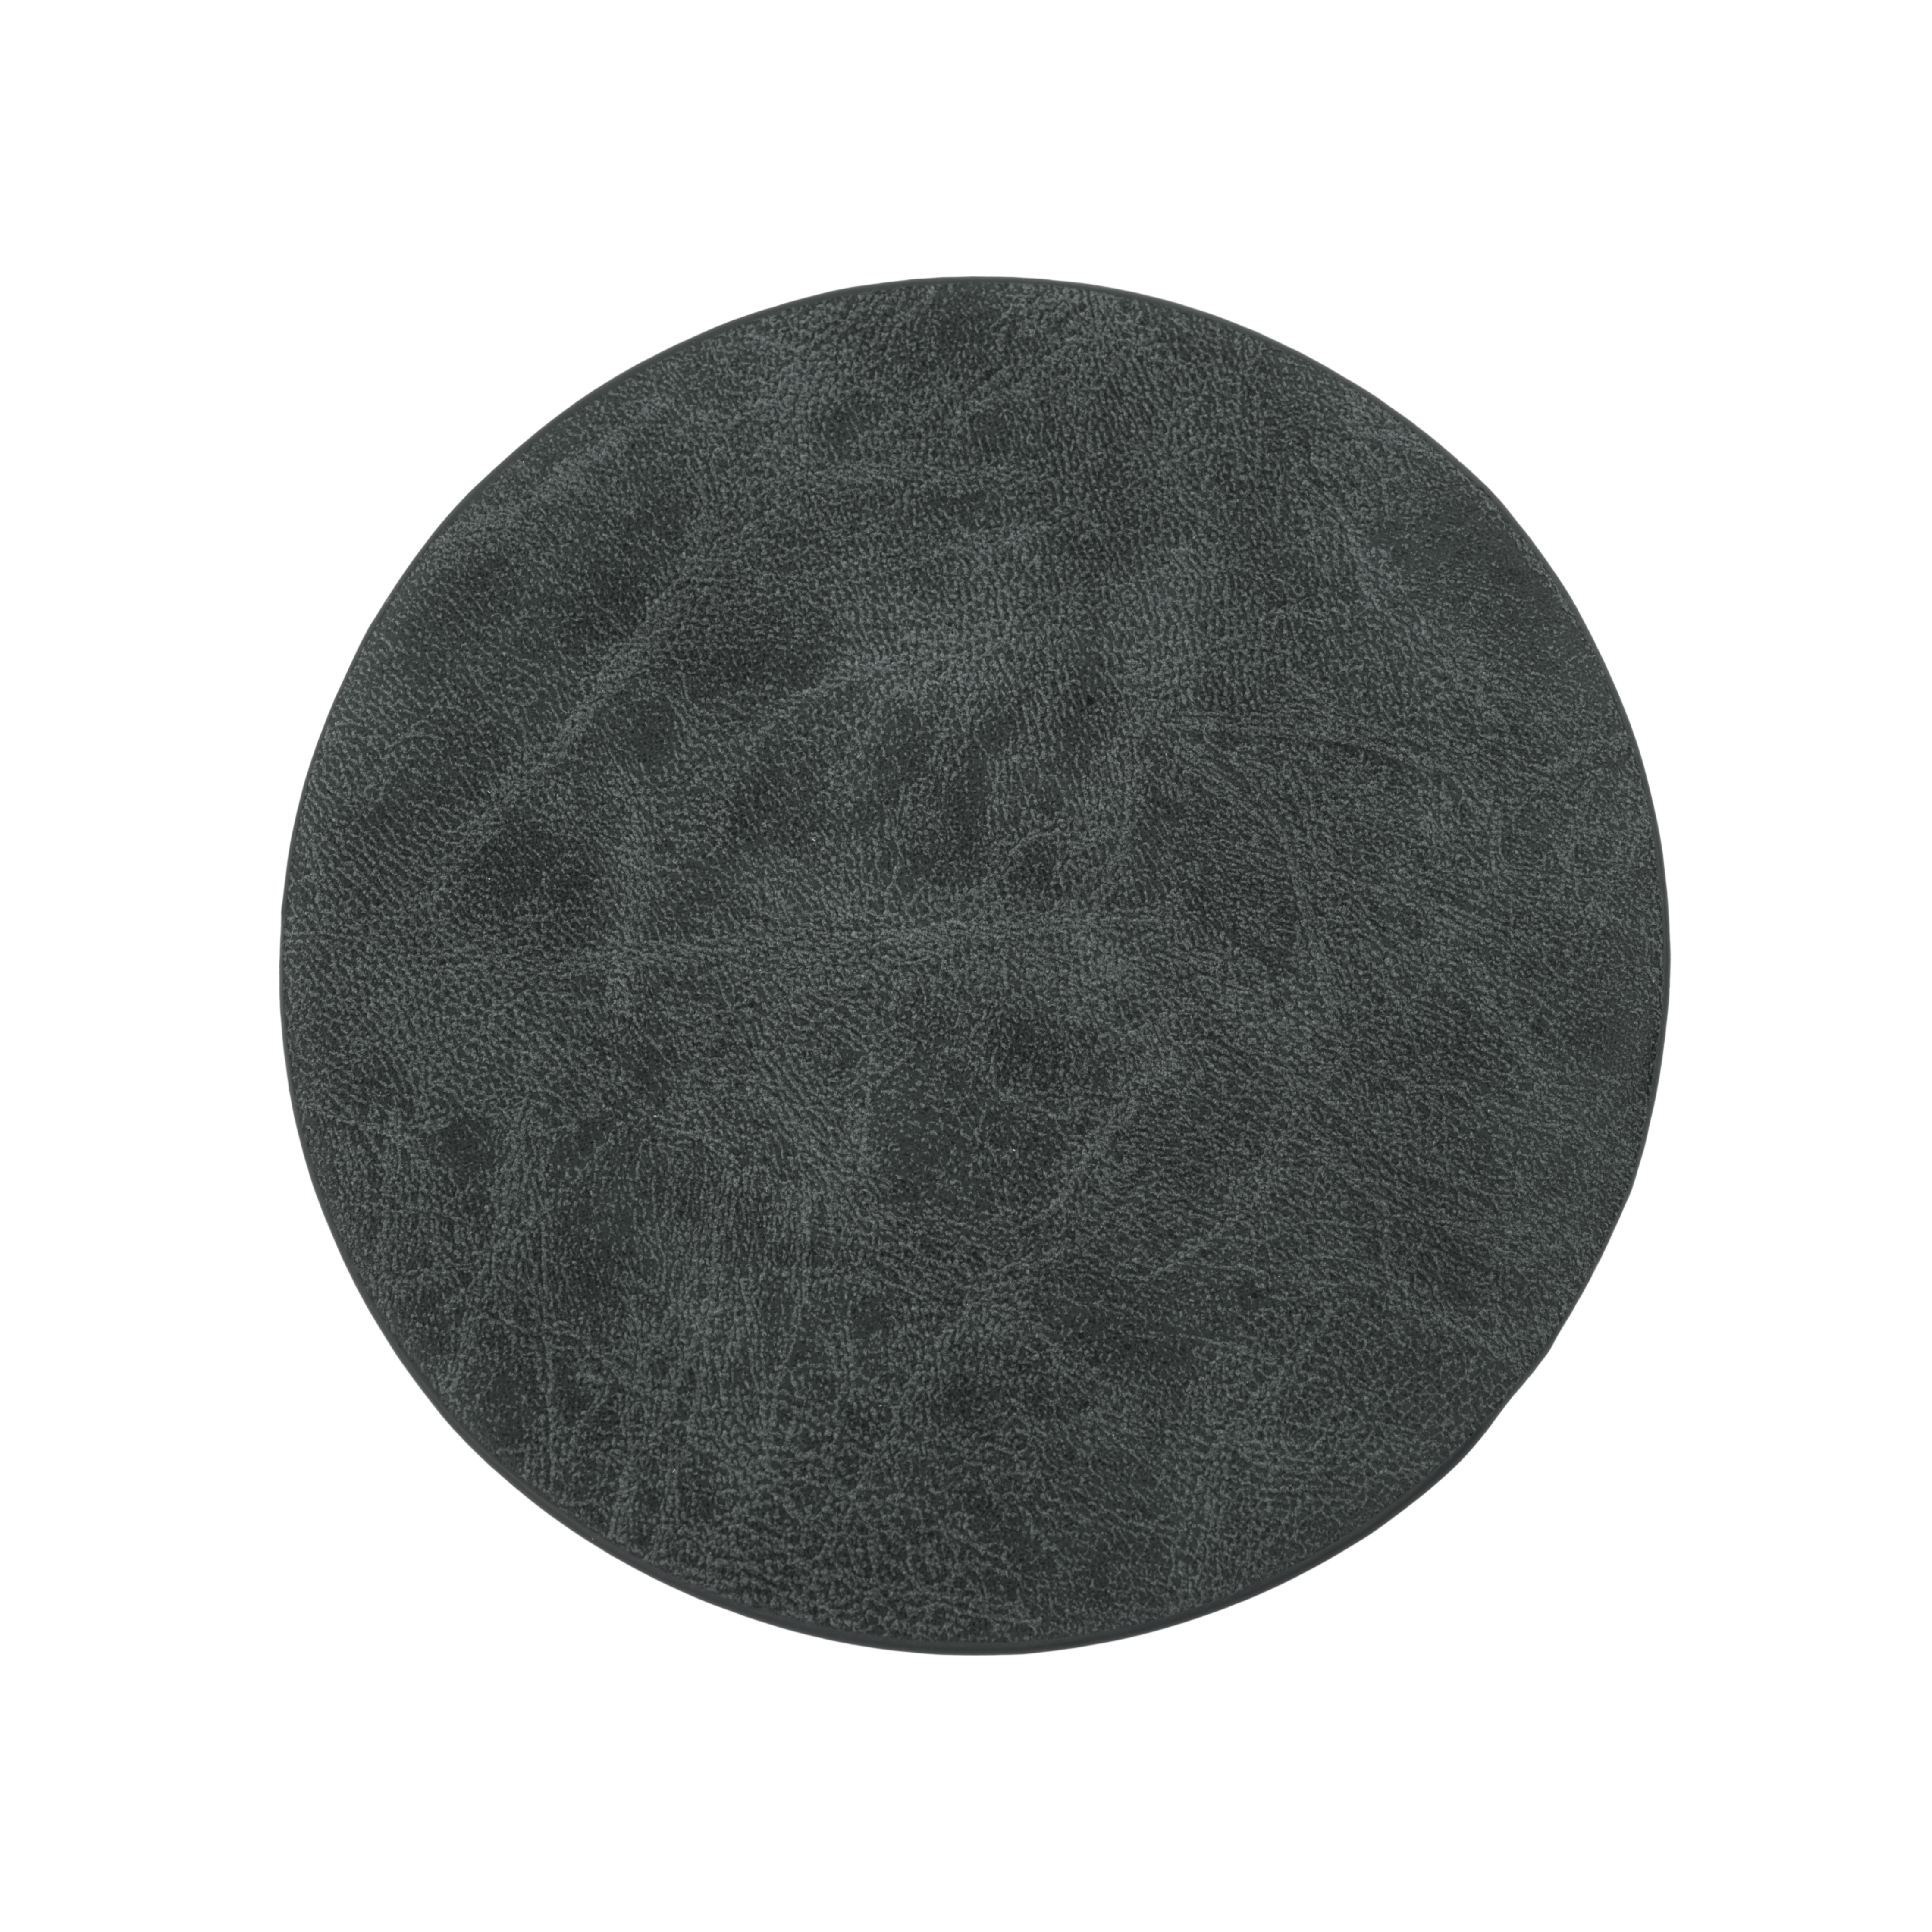 Sous-verre TRUMAN, dia 9,5 cm - set/4, black